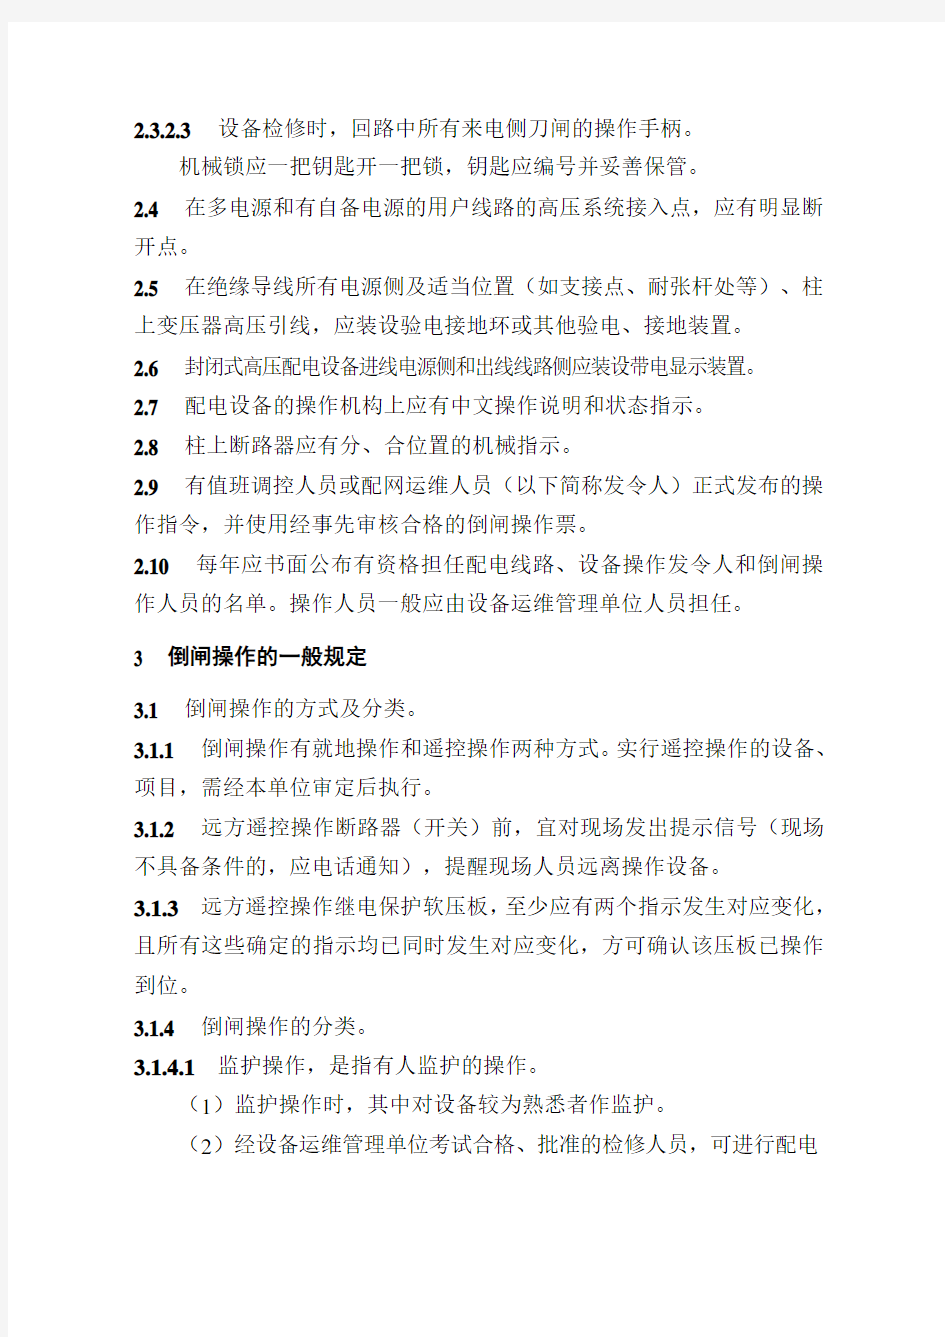 国网湖北省电力公司电气操作票实施细则(配电部分).